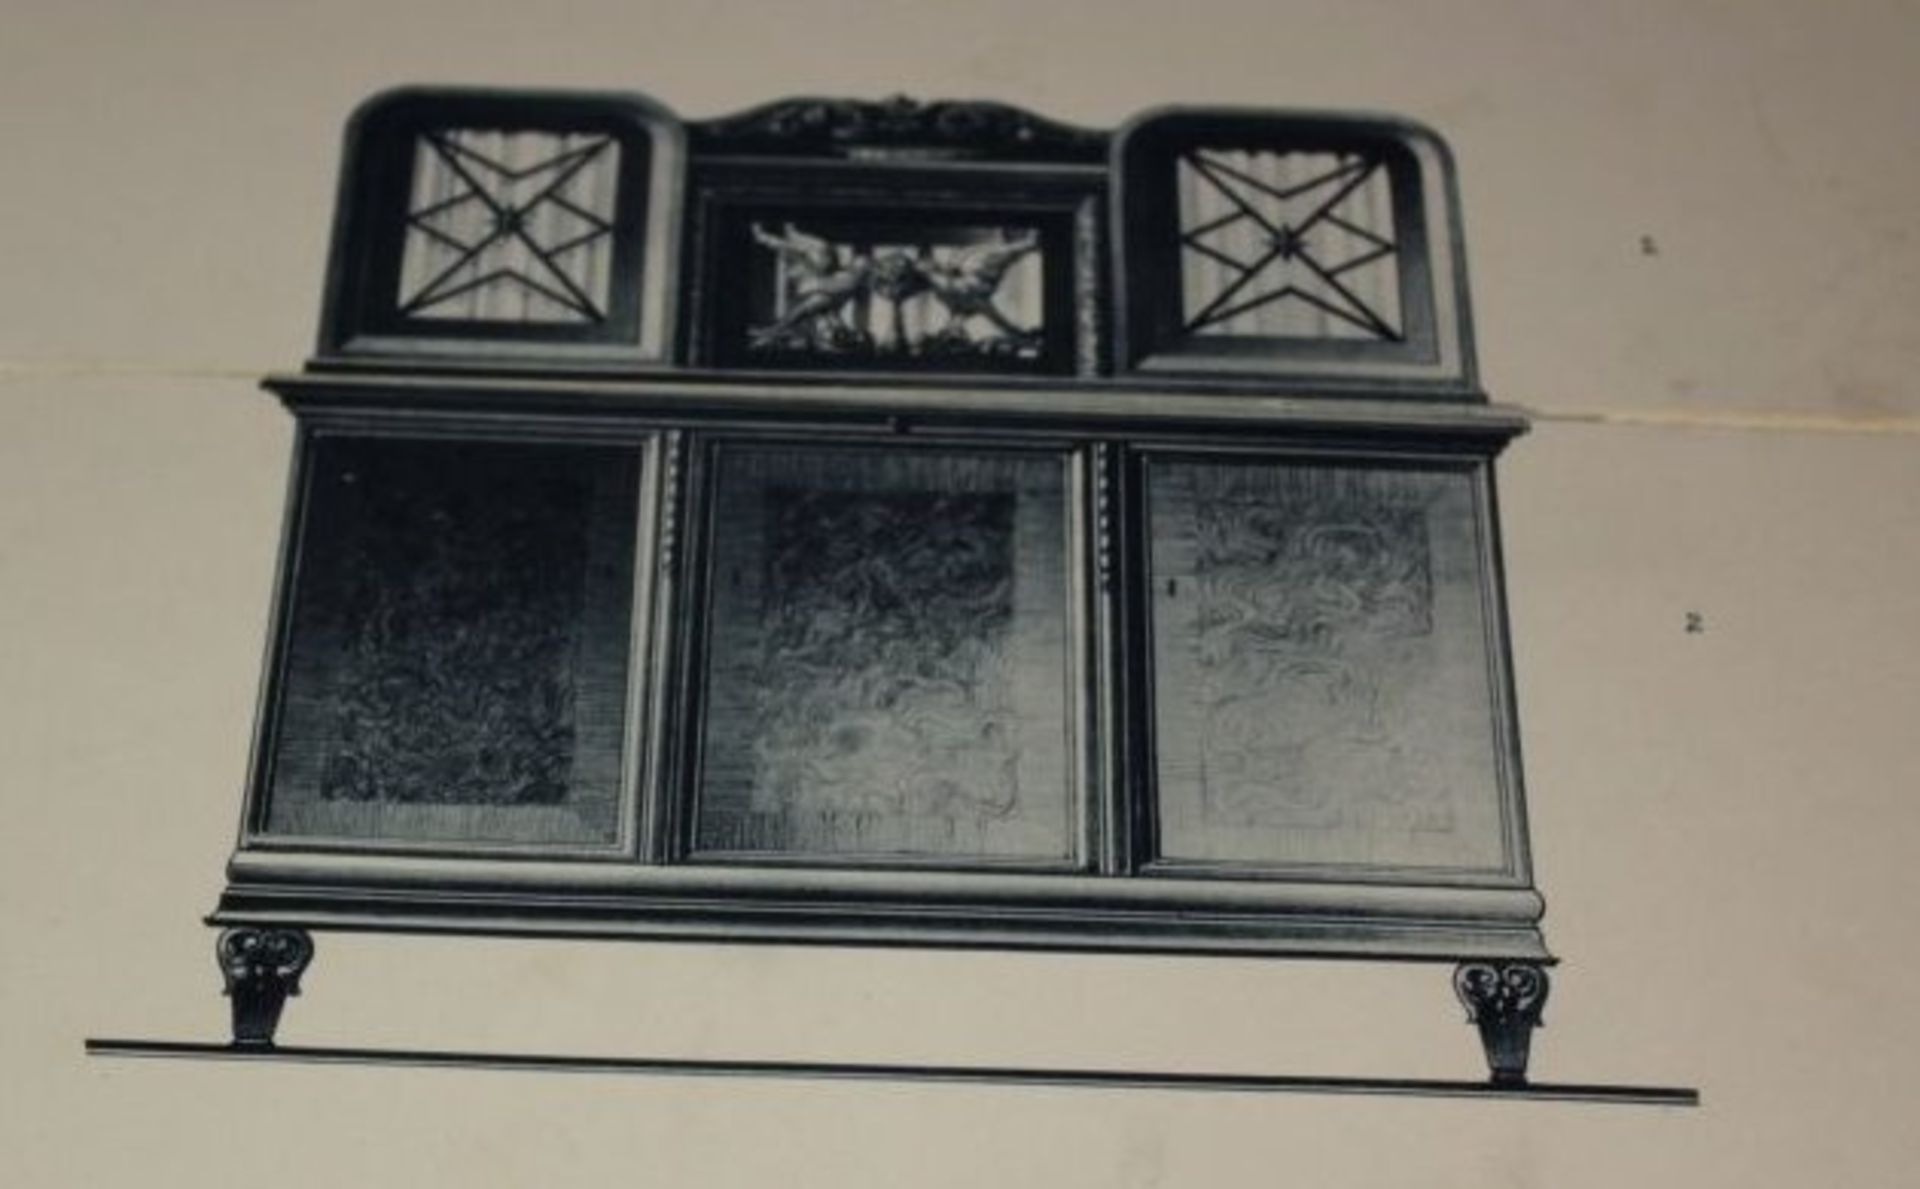 Modellkatalog "Speisezimmer", 1. Ausgabe wohl um 1920, Alters-u. Gebrauchsspuren - Bild 3 aus 4